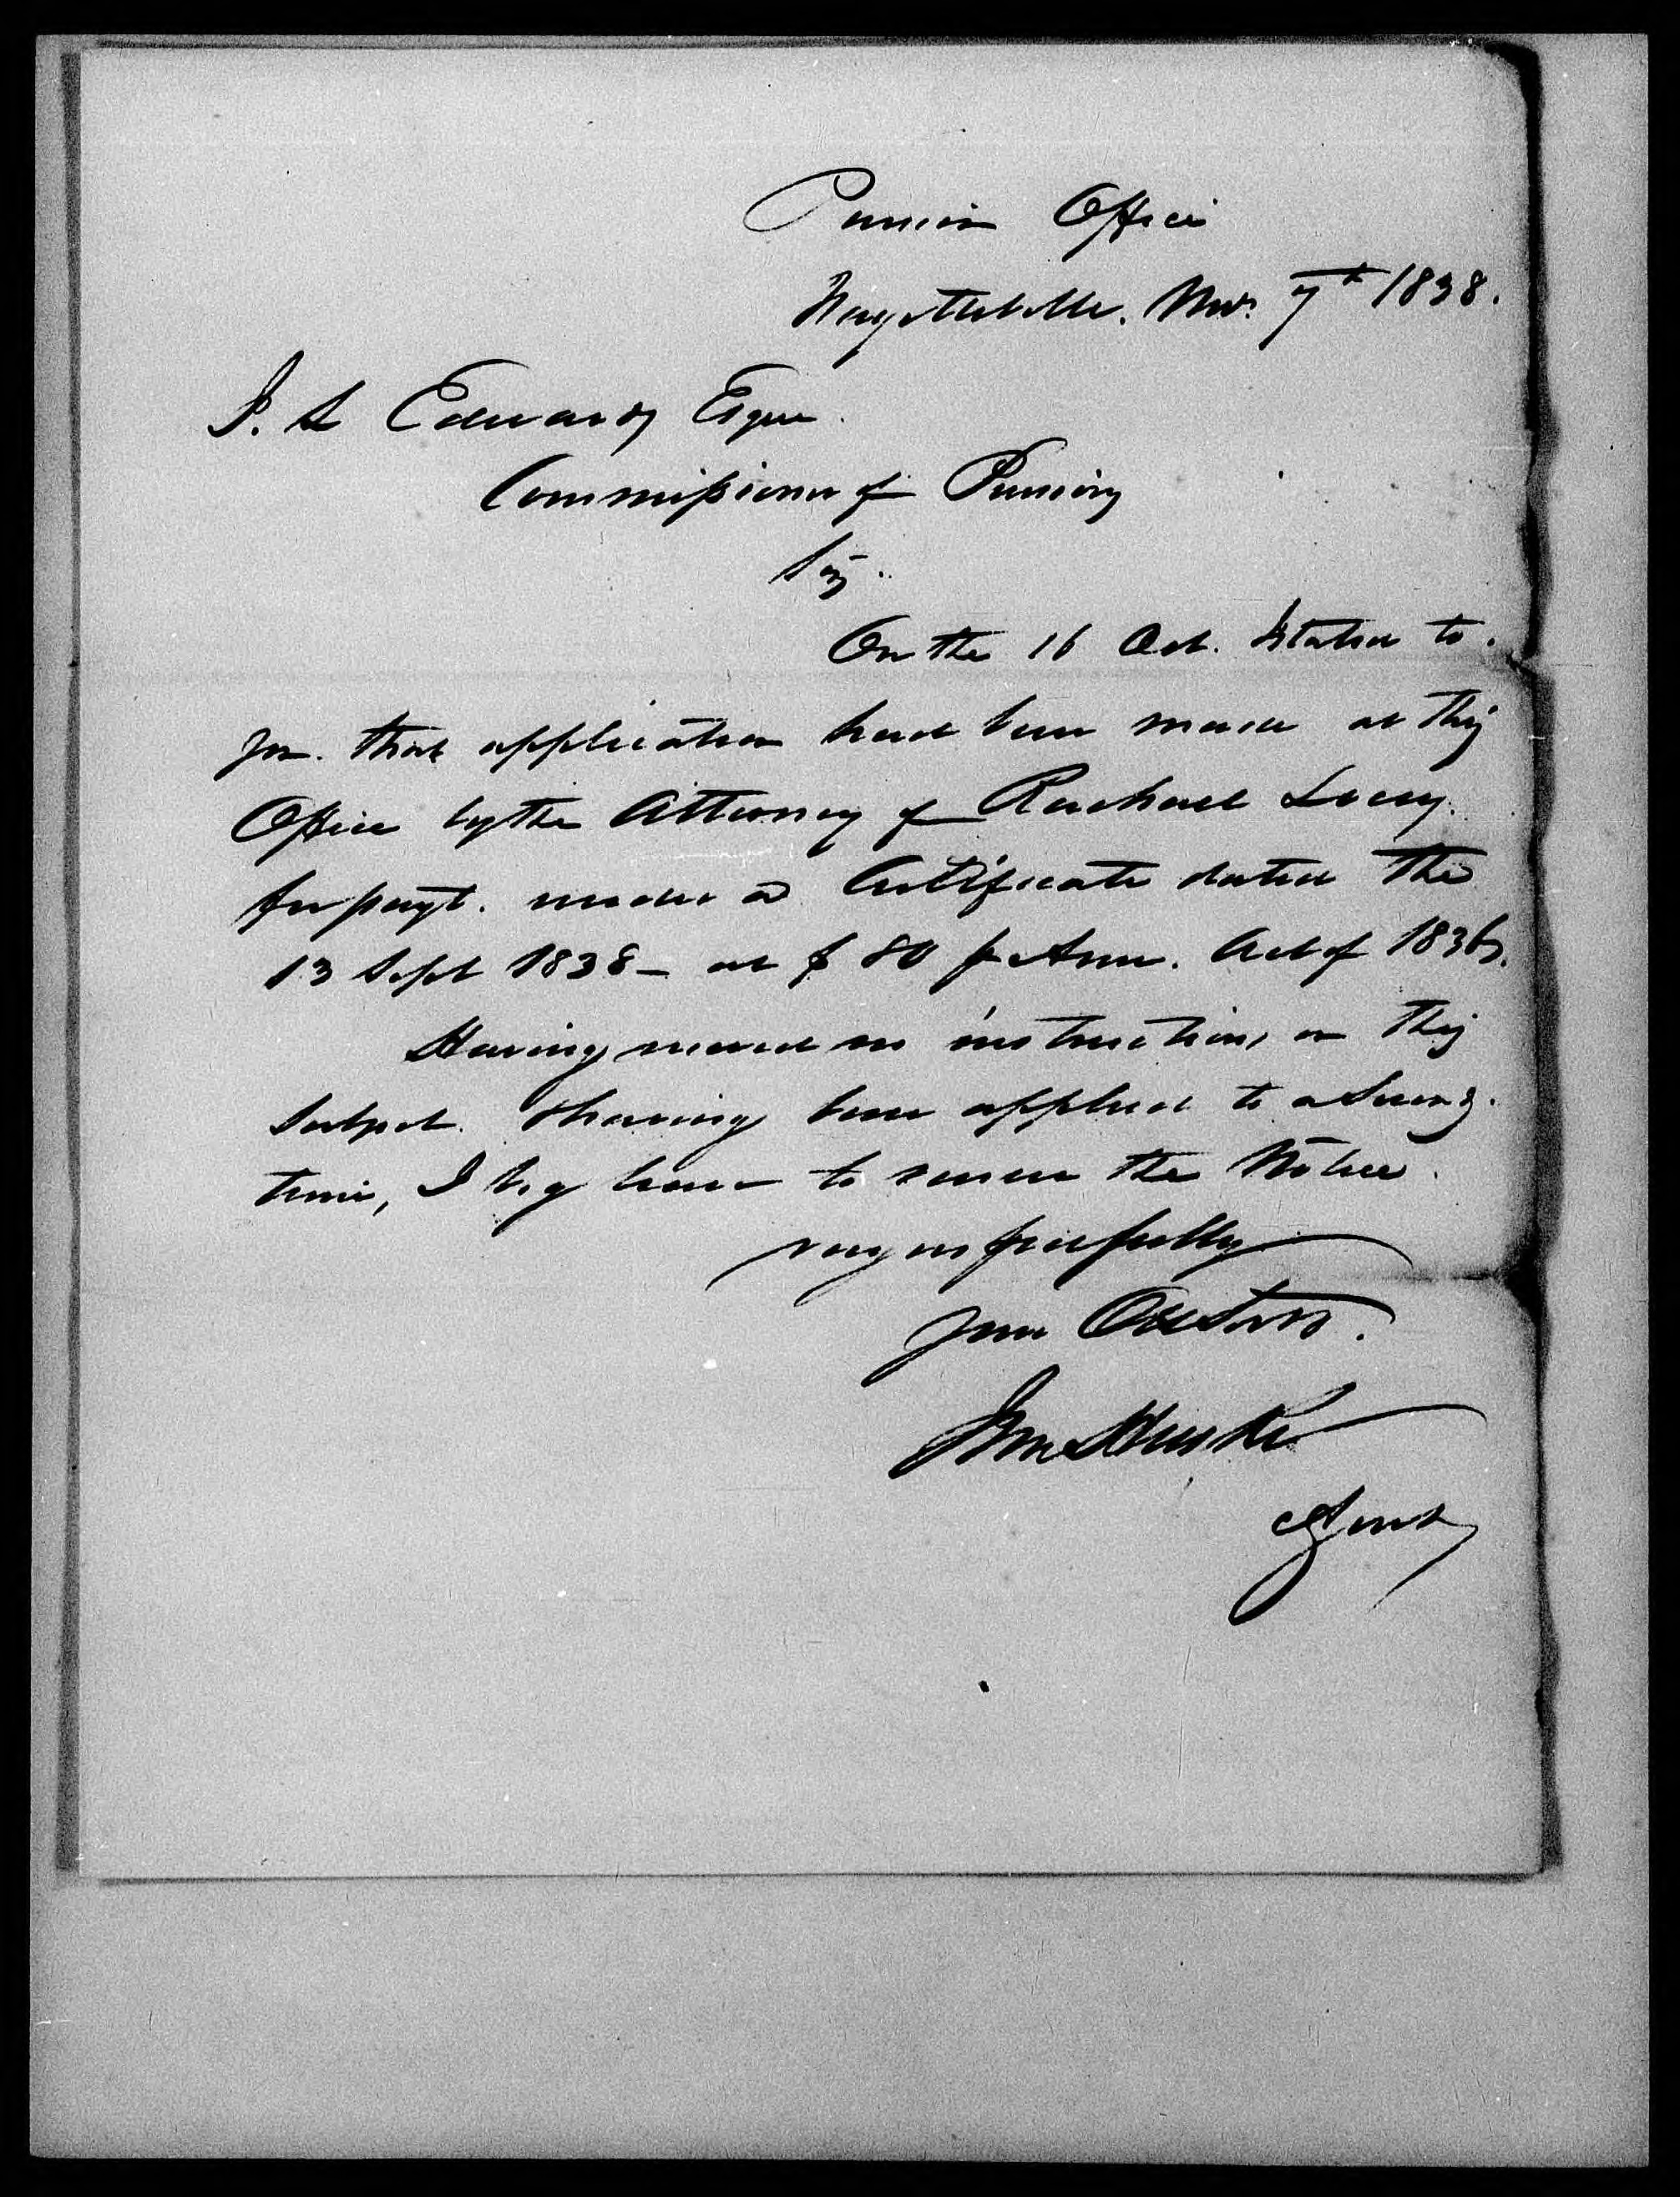 Letter from John Huske to James L. Edwards, 7 November 1838, page 1